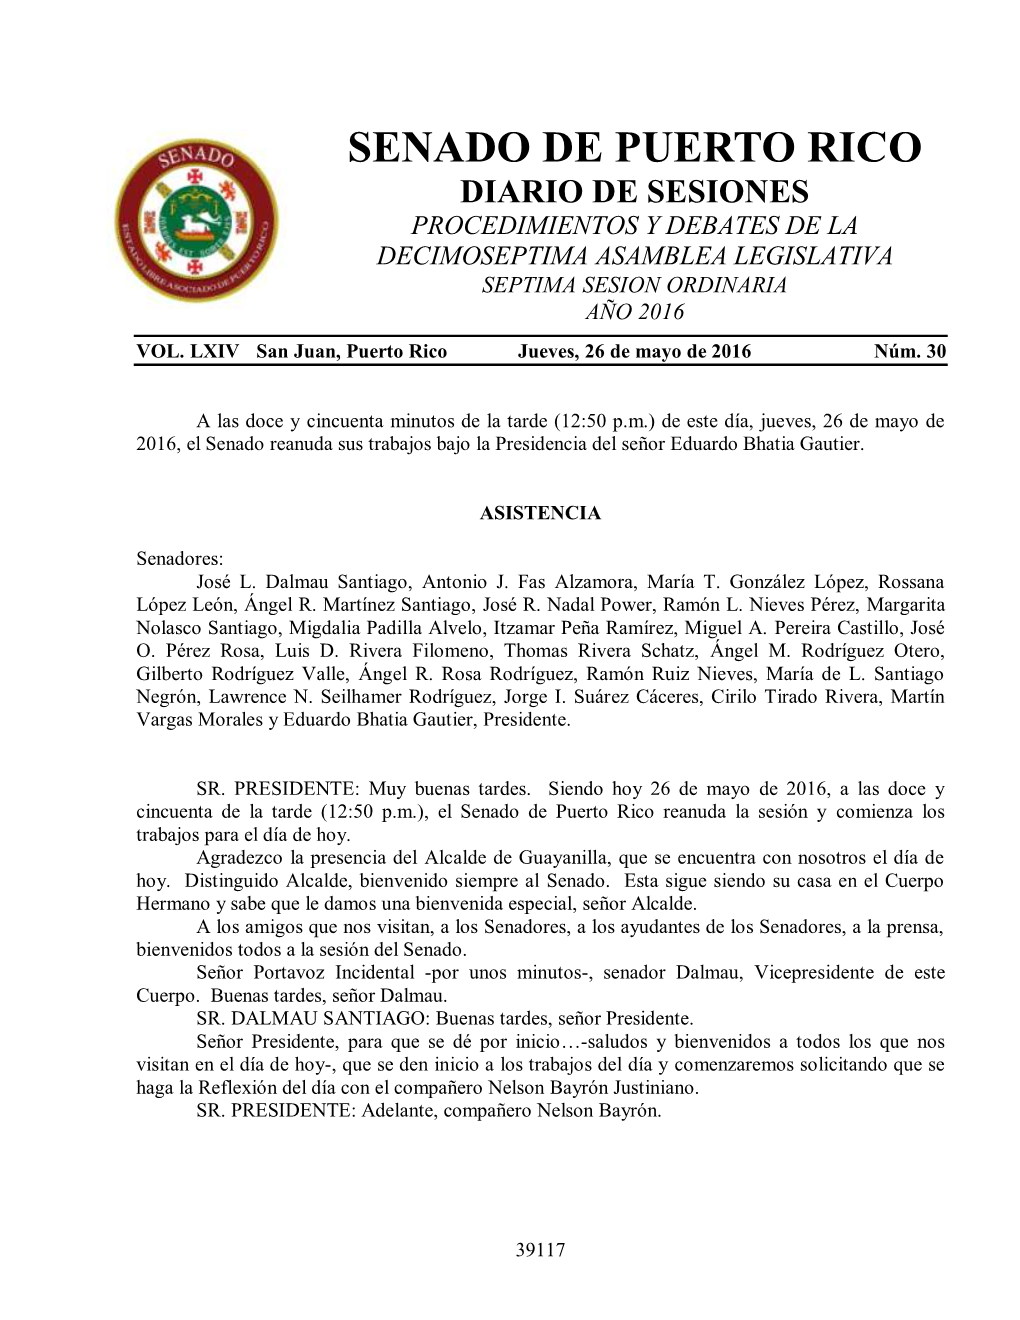 Diario De Sesiones Procedimientos Y Debates De La Decimoseptima Asamblea Legislativa Septima Sesion Ordinaria Año 2016 Vol